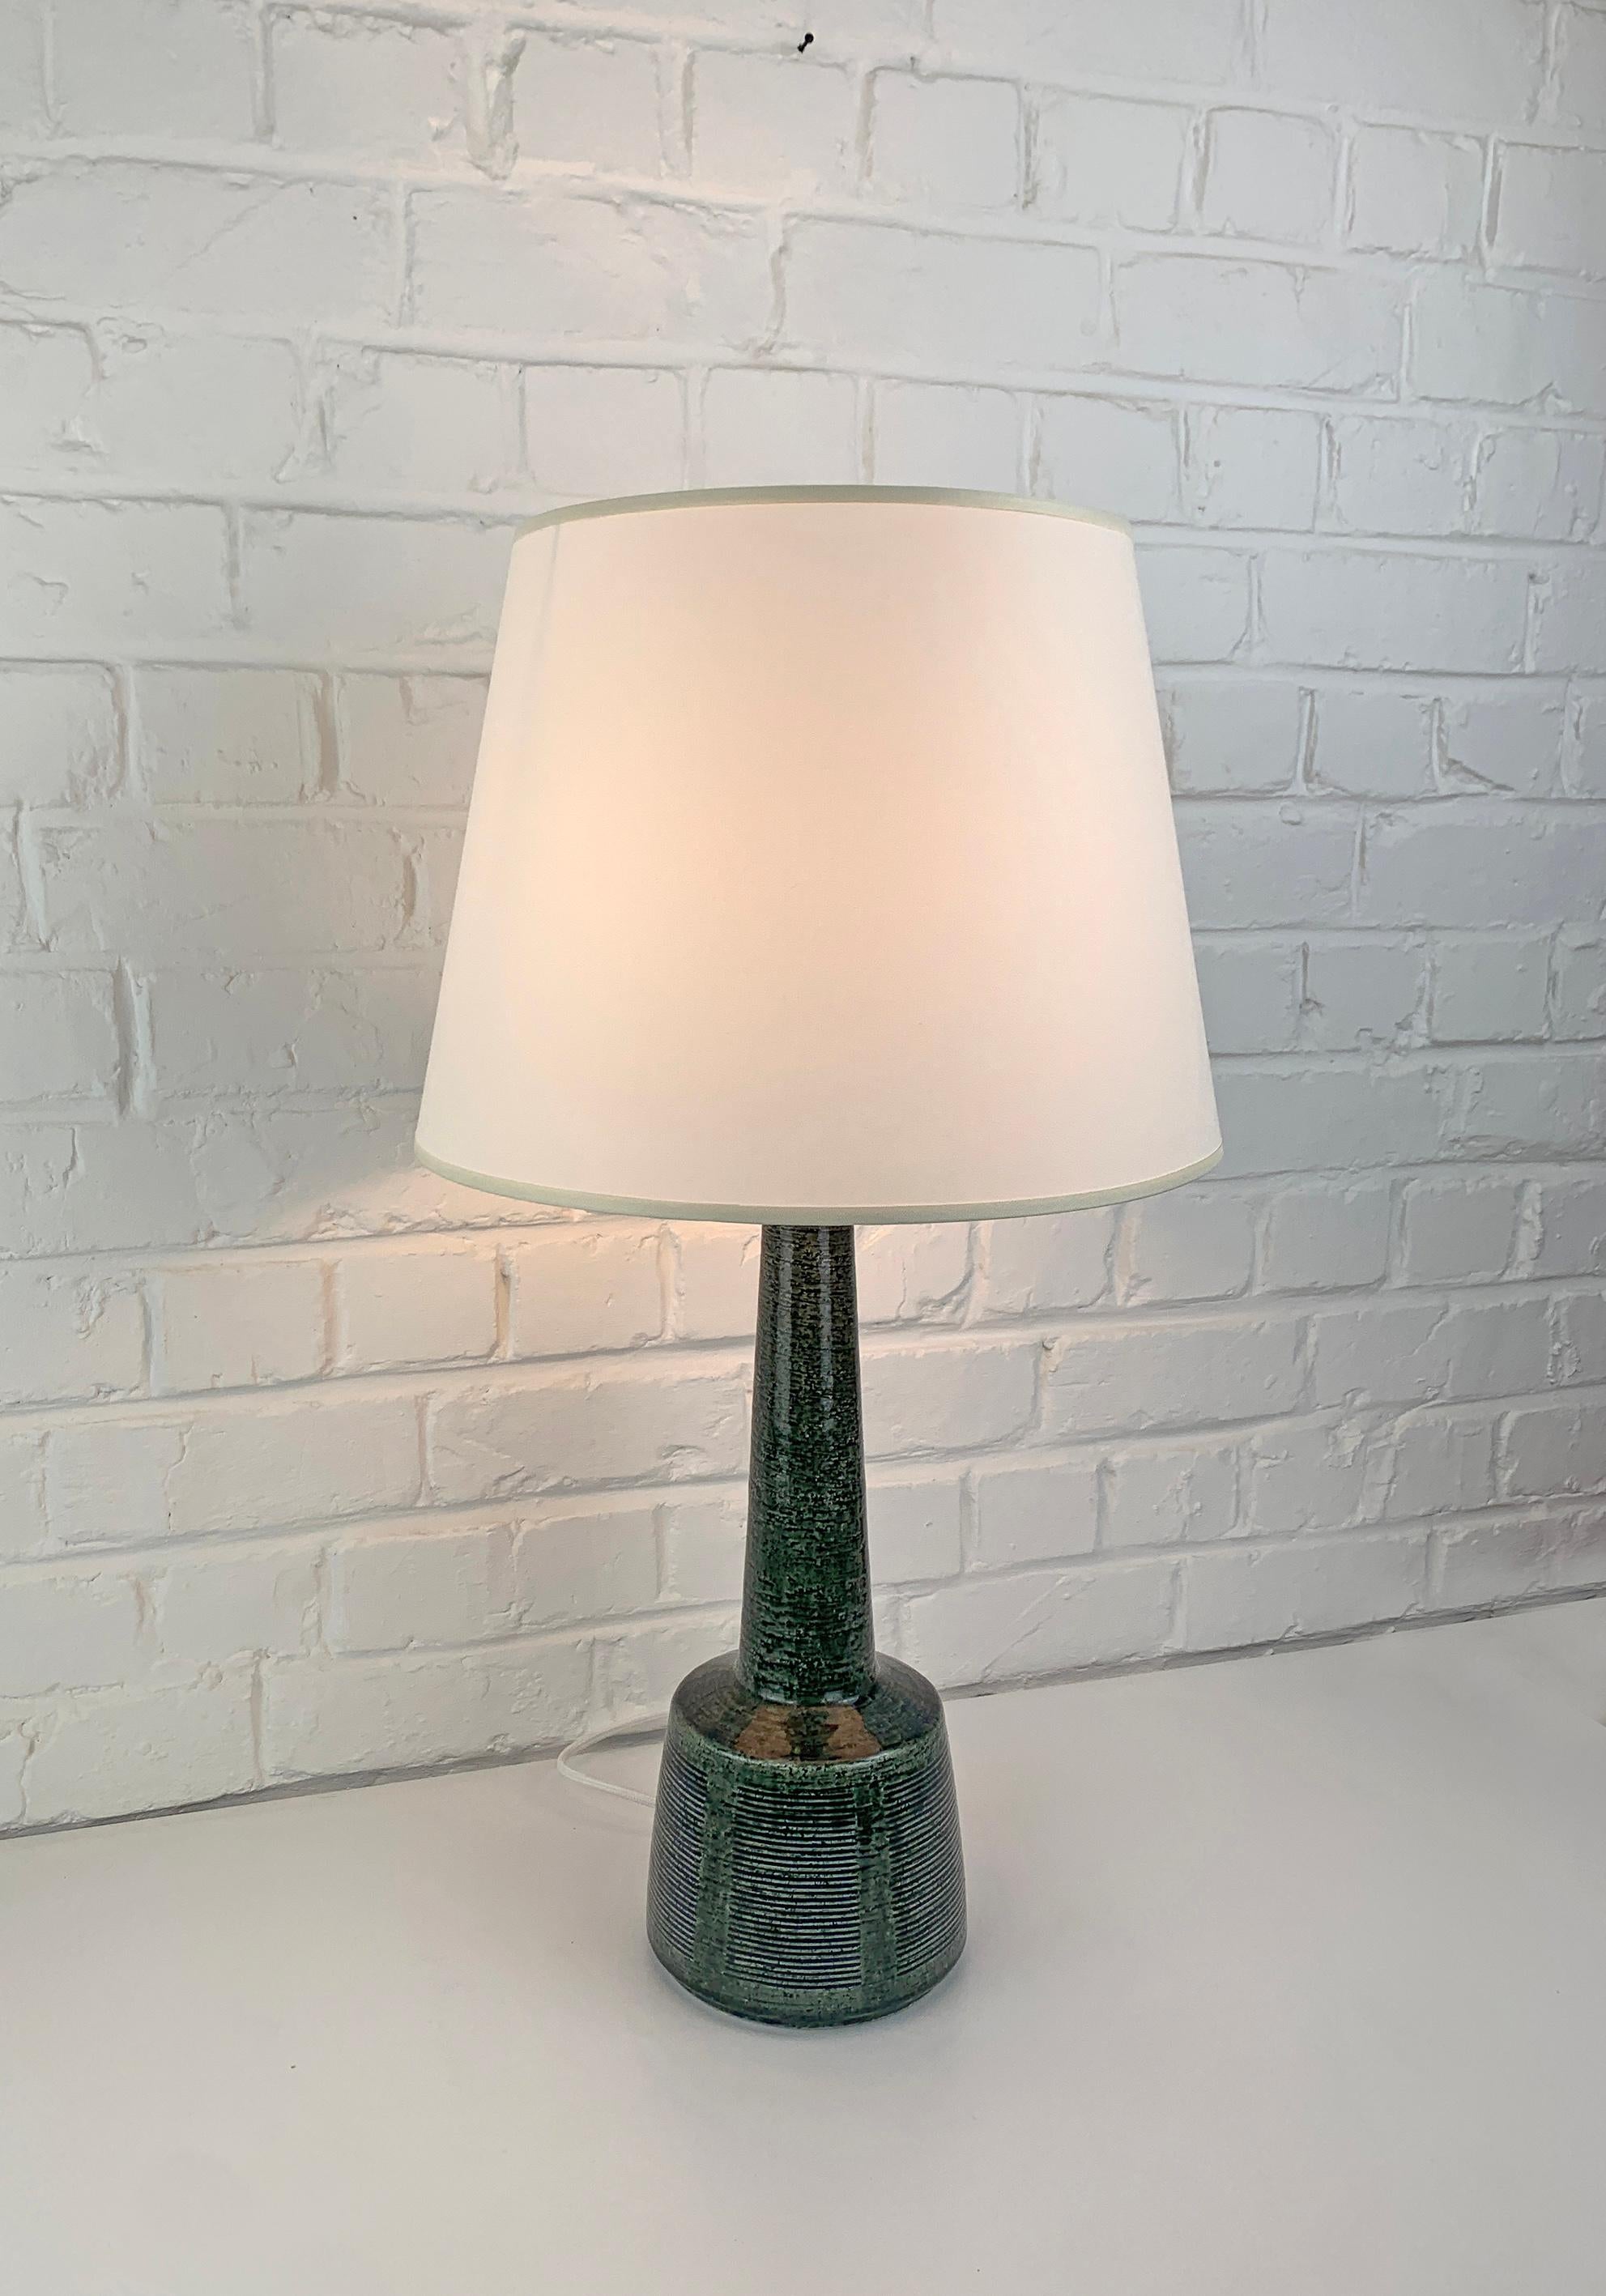 Danish Tall Ceramic table lamp by Palshus, Denmark, design by Esben Klint for Le Klint